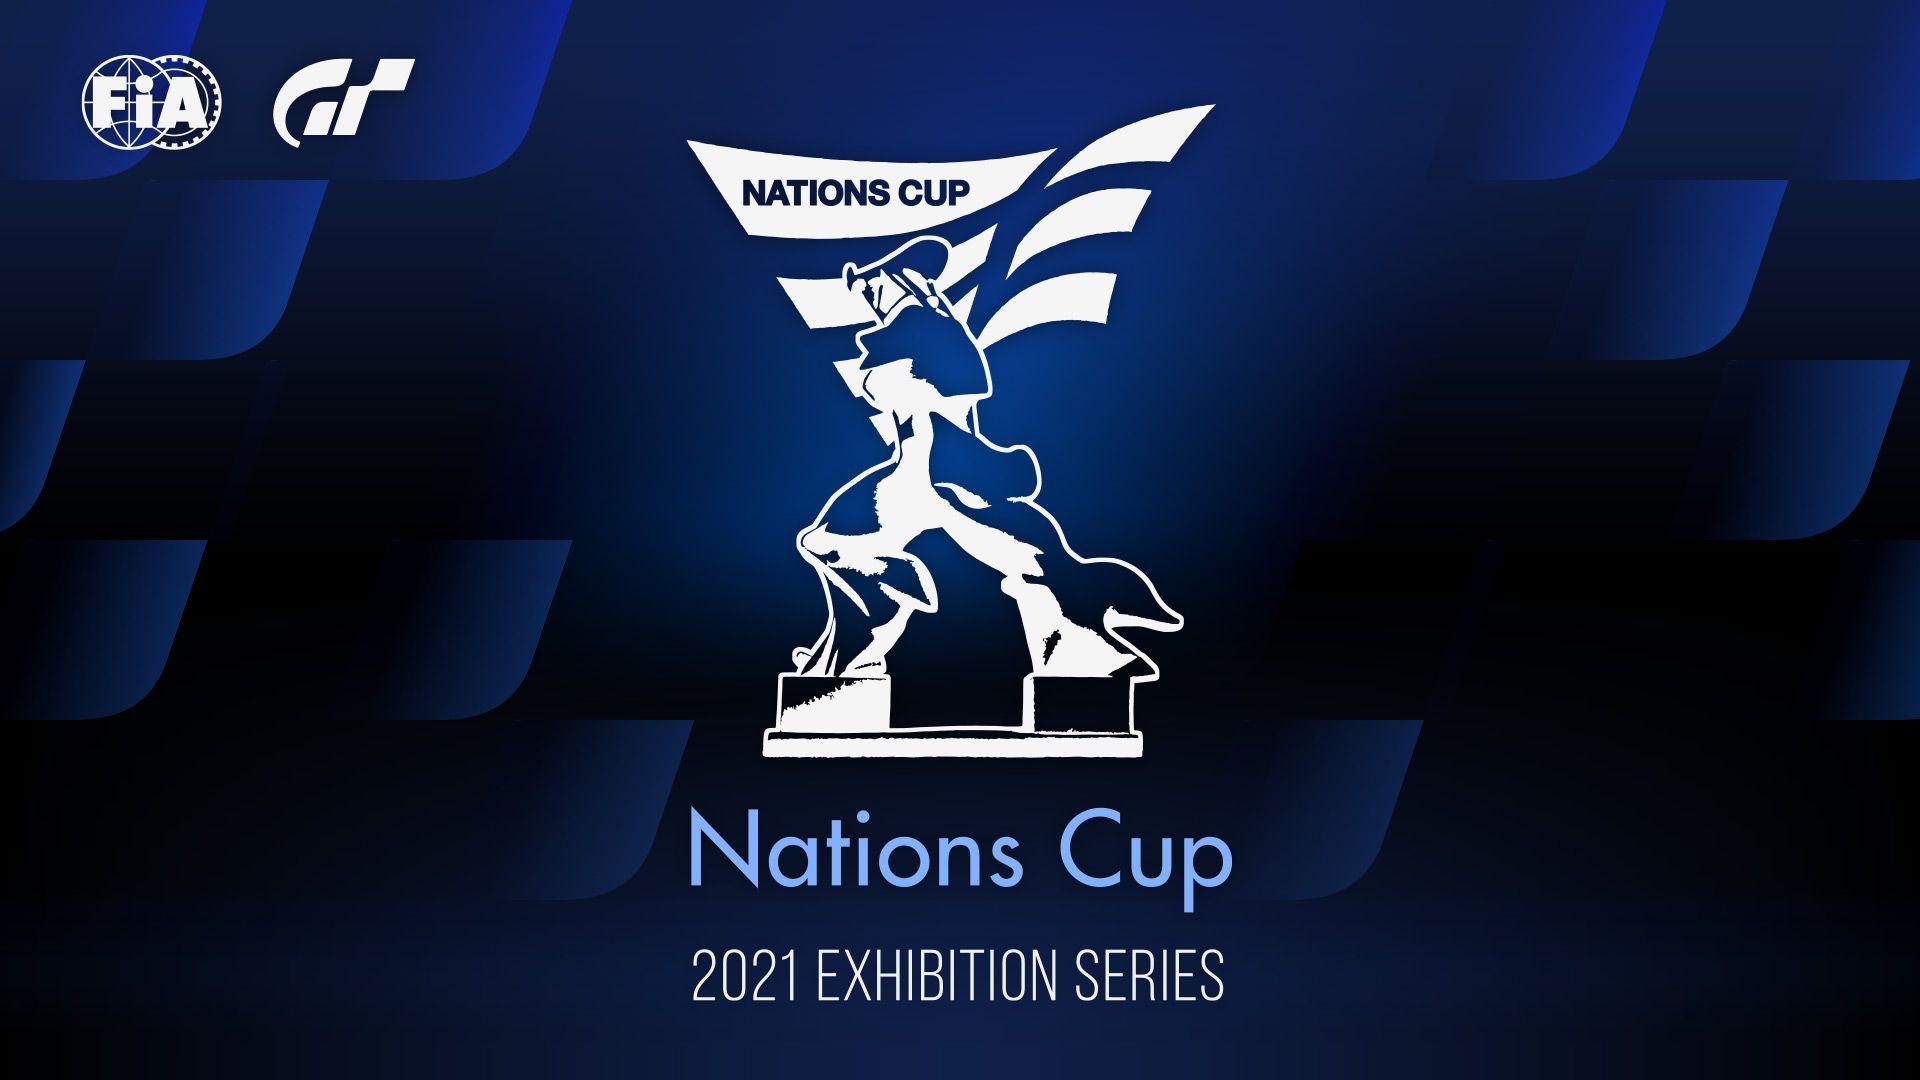 Ouverture de la Nations Cup des Exhibition Series 2021 - gran-turismo.com